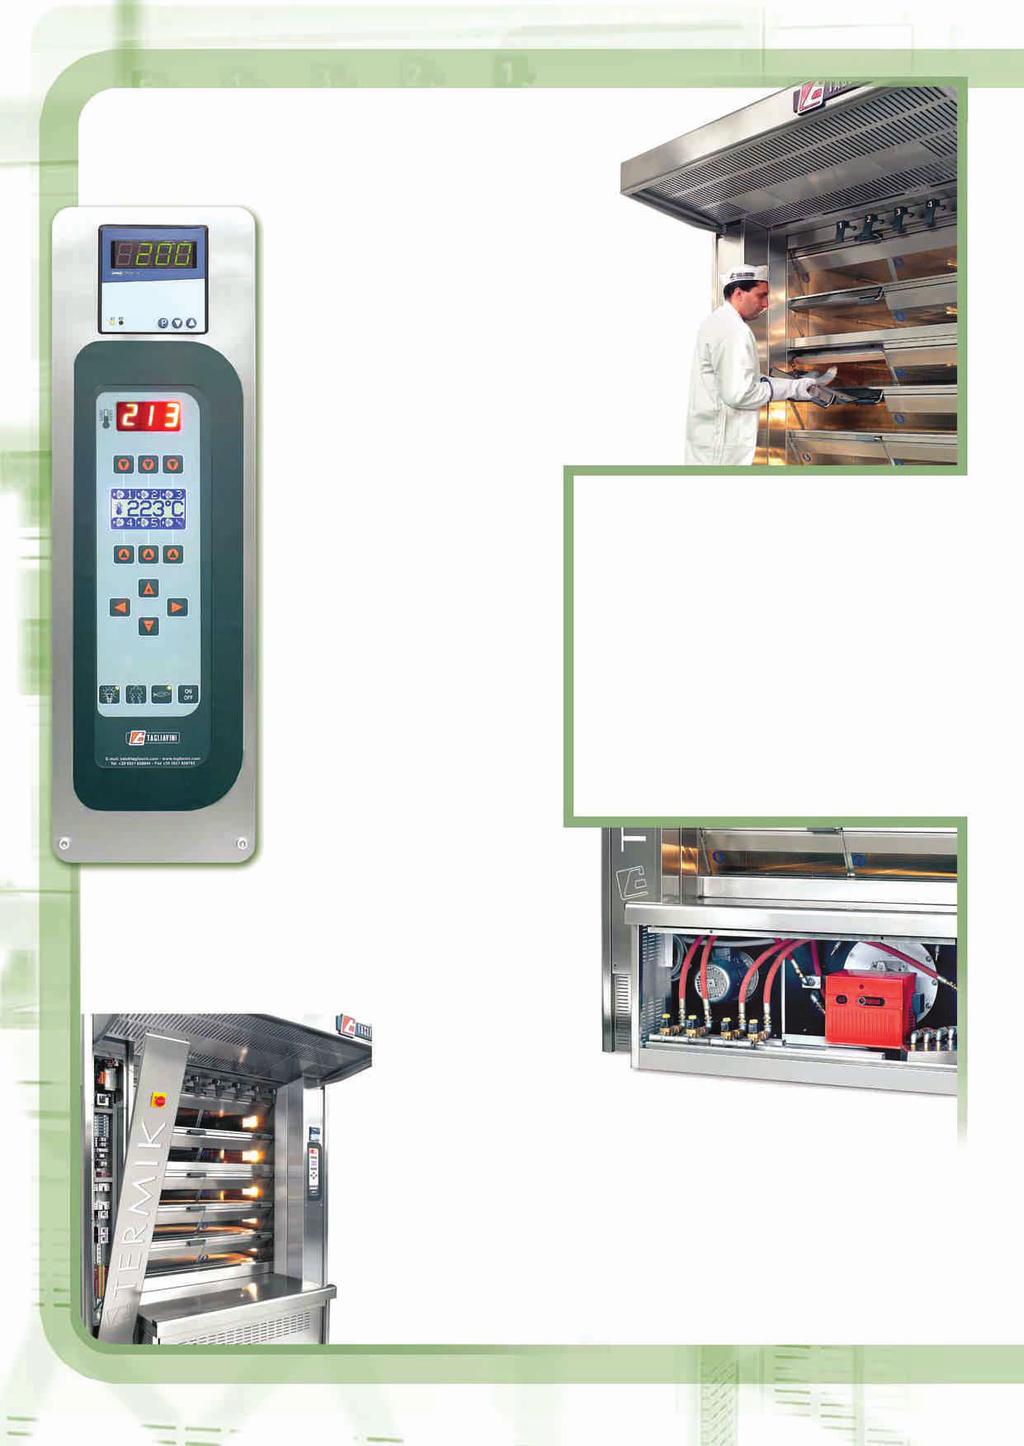 La centralina digitale standard, permette: - Controllo della temperatura tramite una sonda posta direttamente nella camera di cottura.